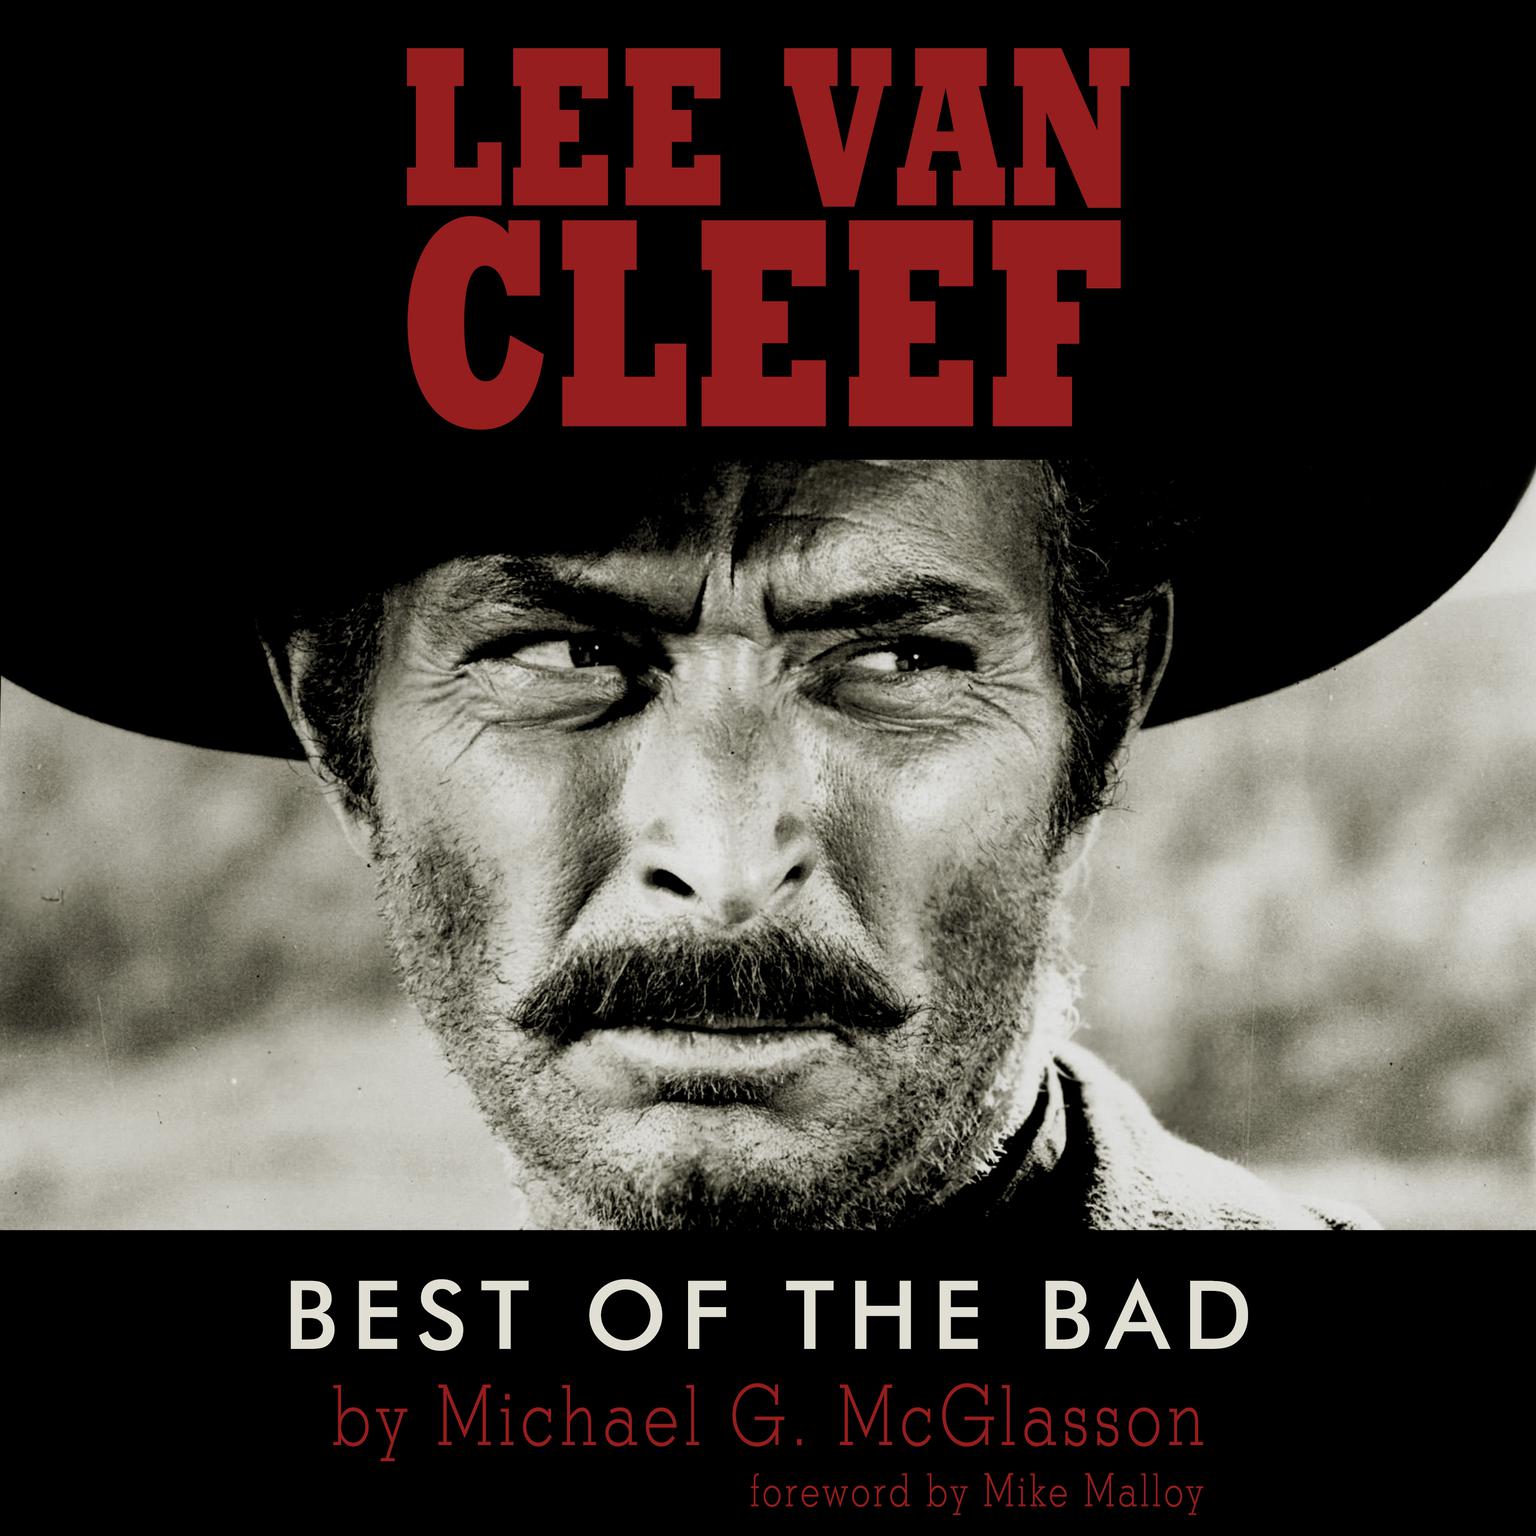 Lee Van Cleef: Best of the Bad  Audiobook, by Michael G. McGlasson